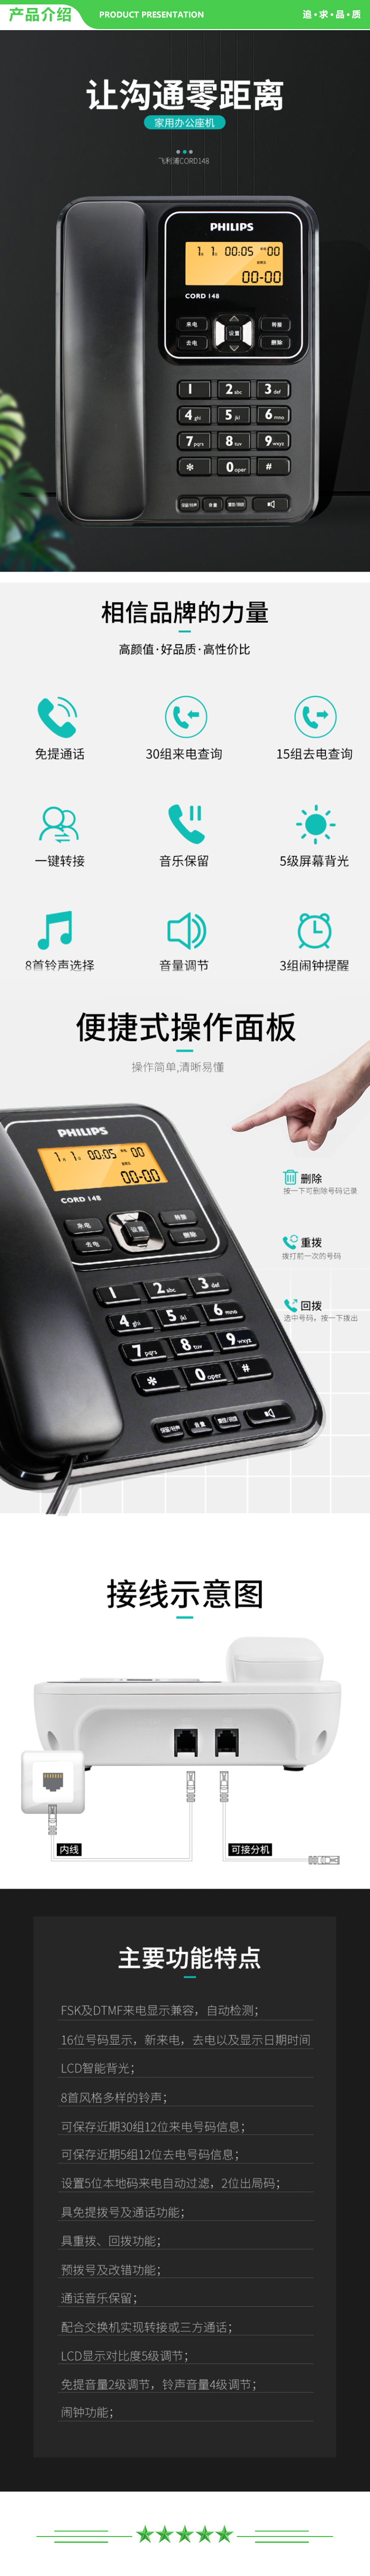 飞利浦 PHILIPS CORD148 电话机座机 固定电话 办公家用 屏幕橙色背光 一键转接 黑色 .jpg